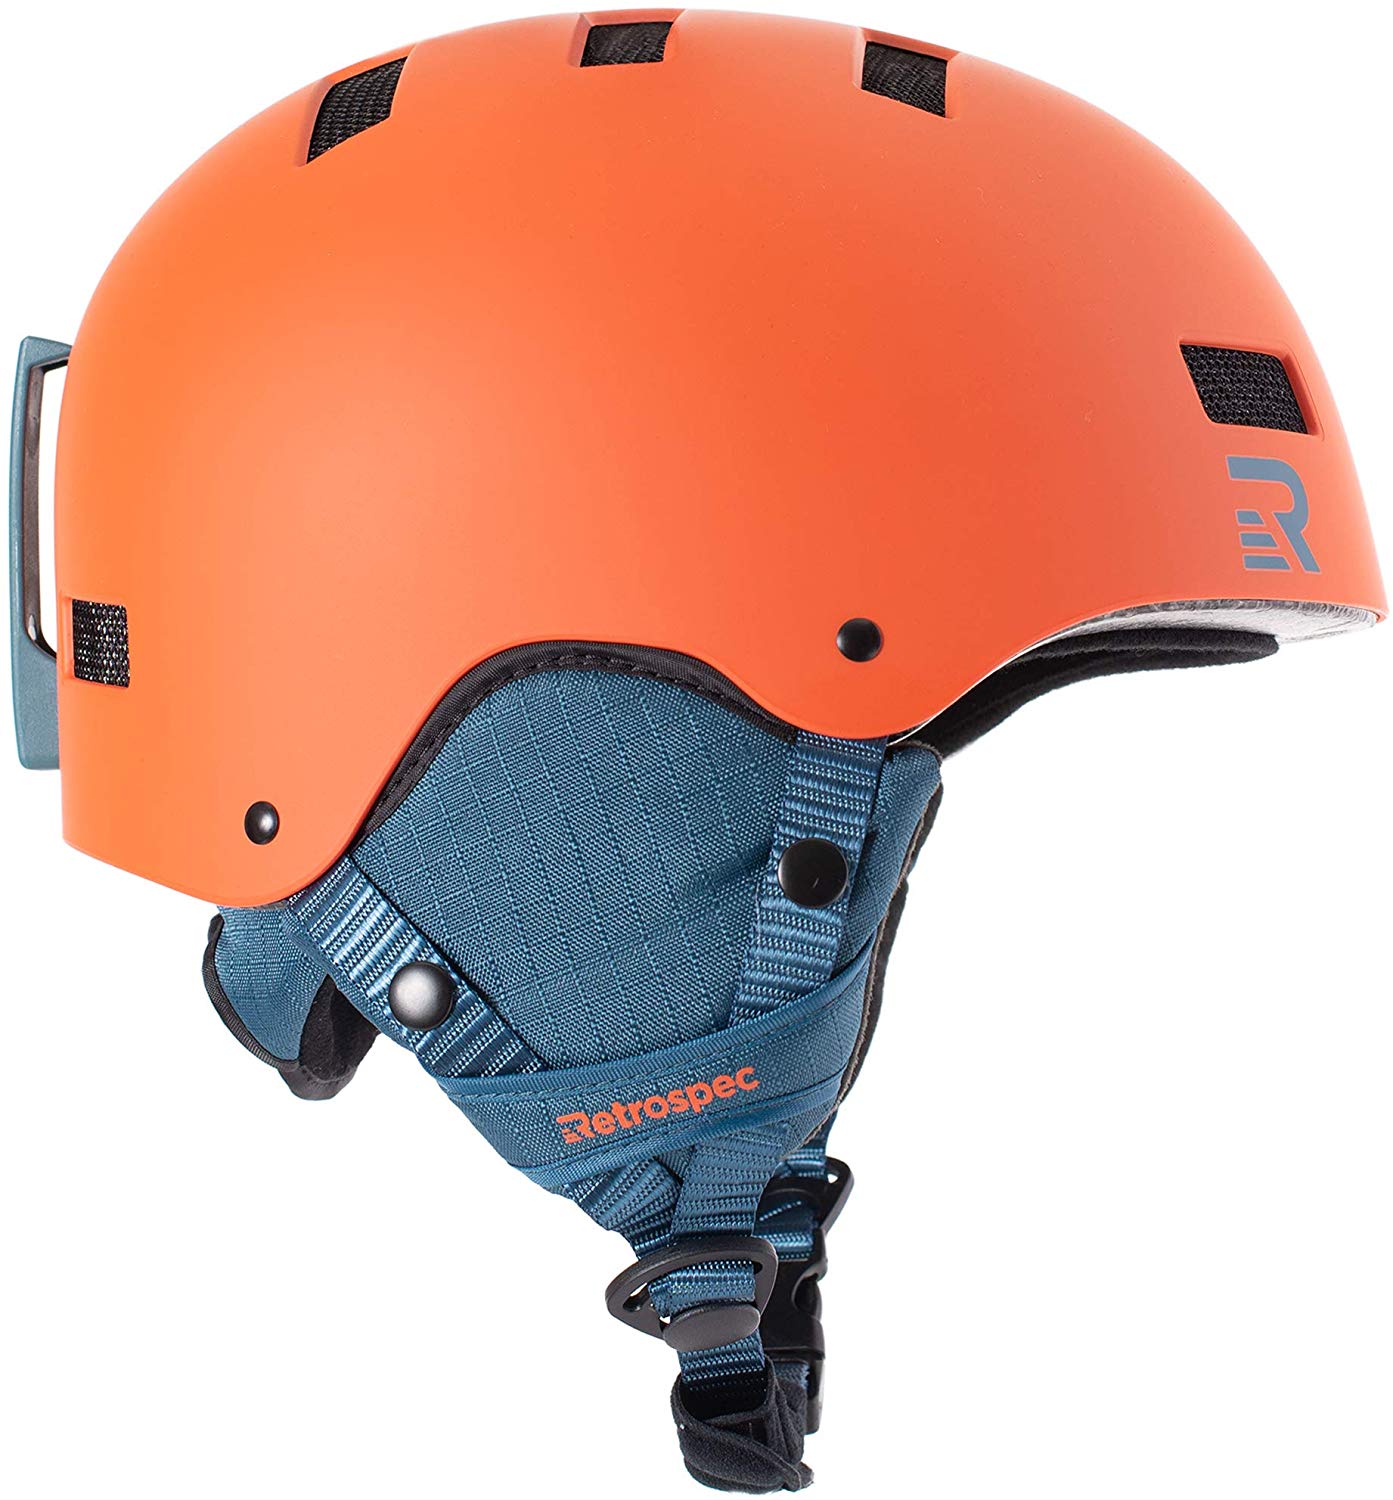 Retrospec Convertible Ski Helmet